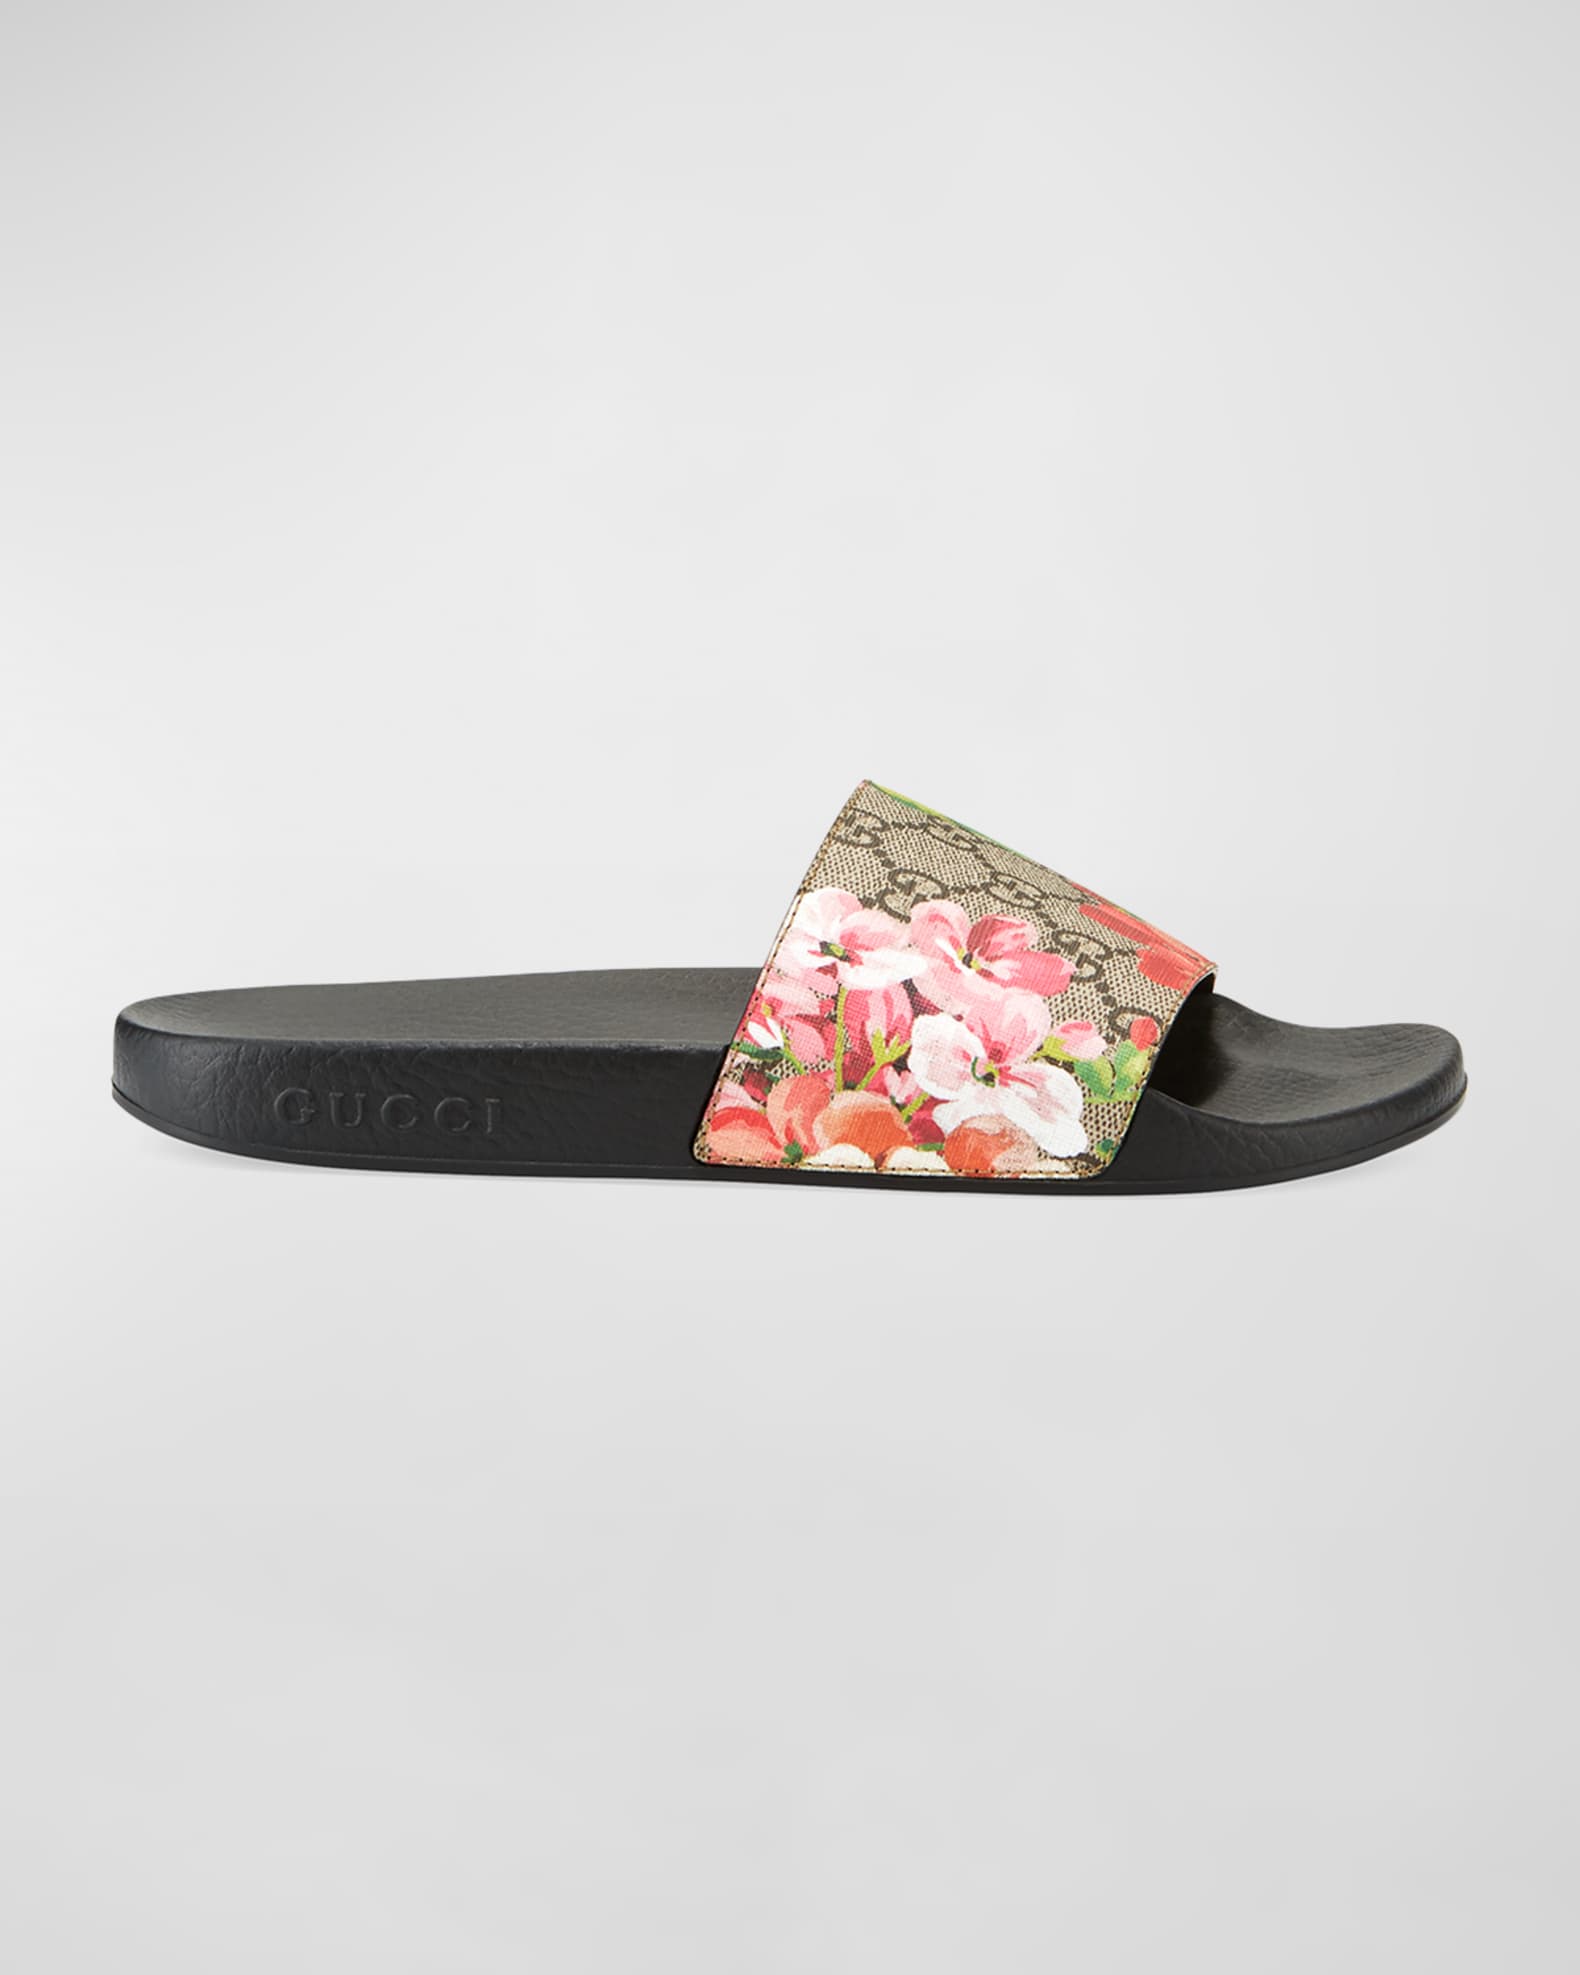 Cutout gg rubber sandals - Gucci - Girls